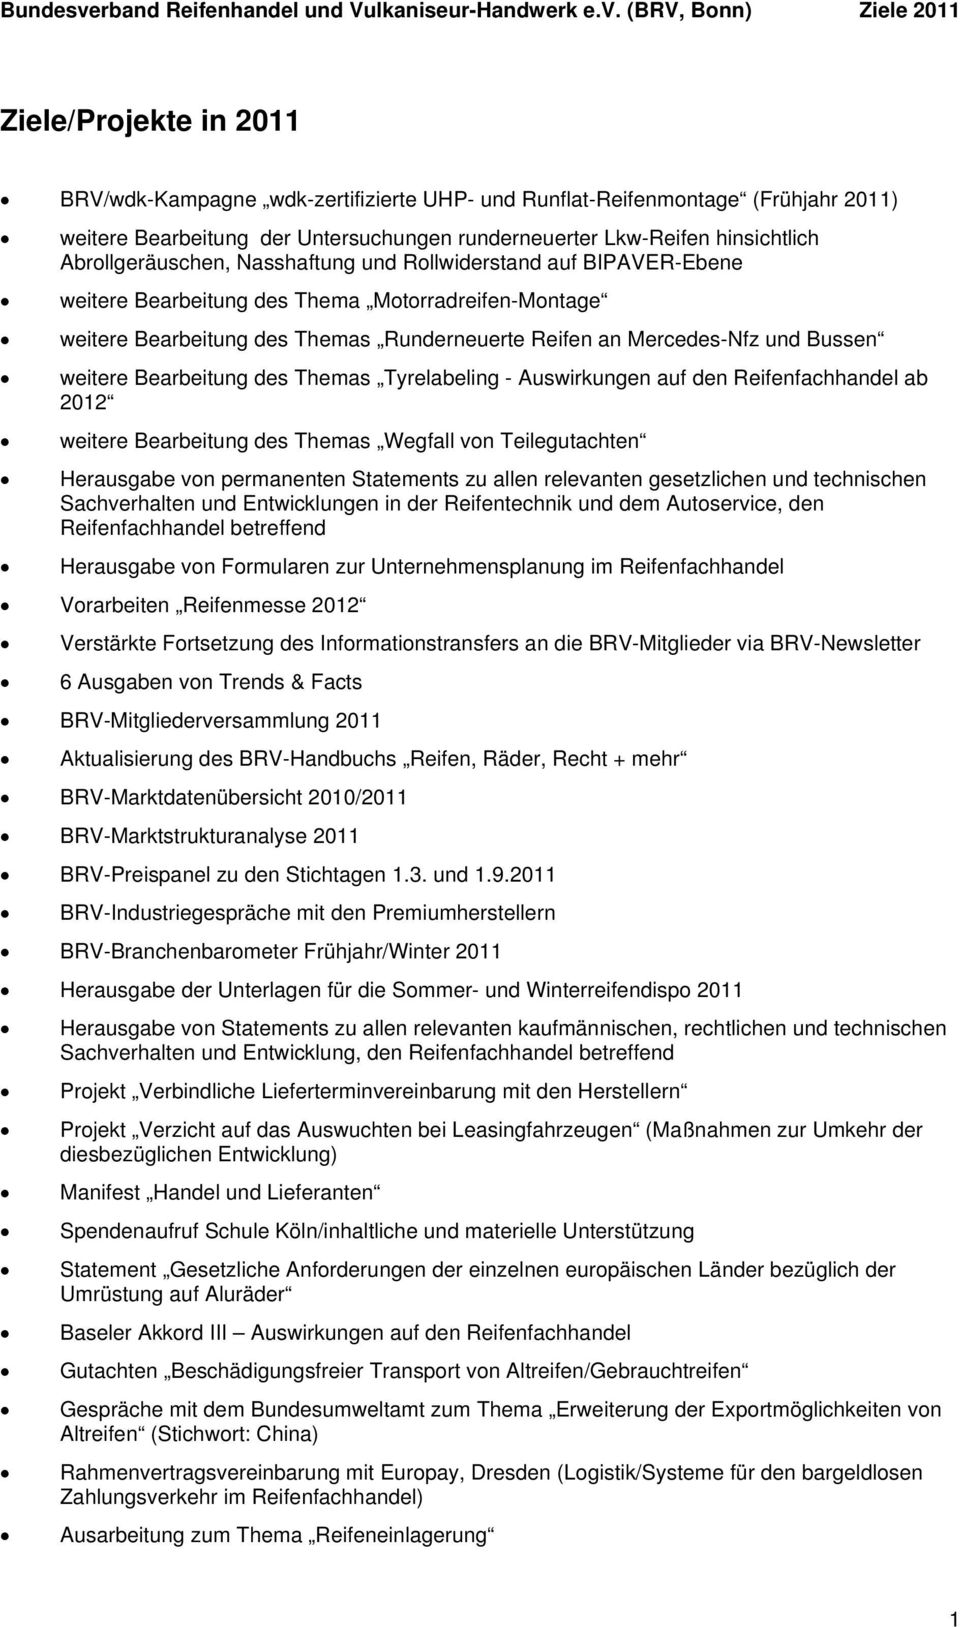 (BRV, Bonn) Ziele 2011 Ziele/Projekte in 2011 BRV/wdk-Kampagne wdk-zertifizierte UHP- und Runflat-Reifenmontage (Frühjahr 2011) weitere Bearbeitung der Untersuchungen runderneuerter Lkw-Reifen